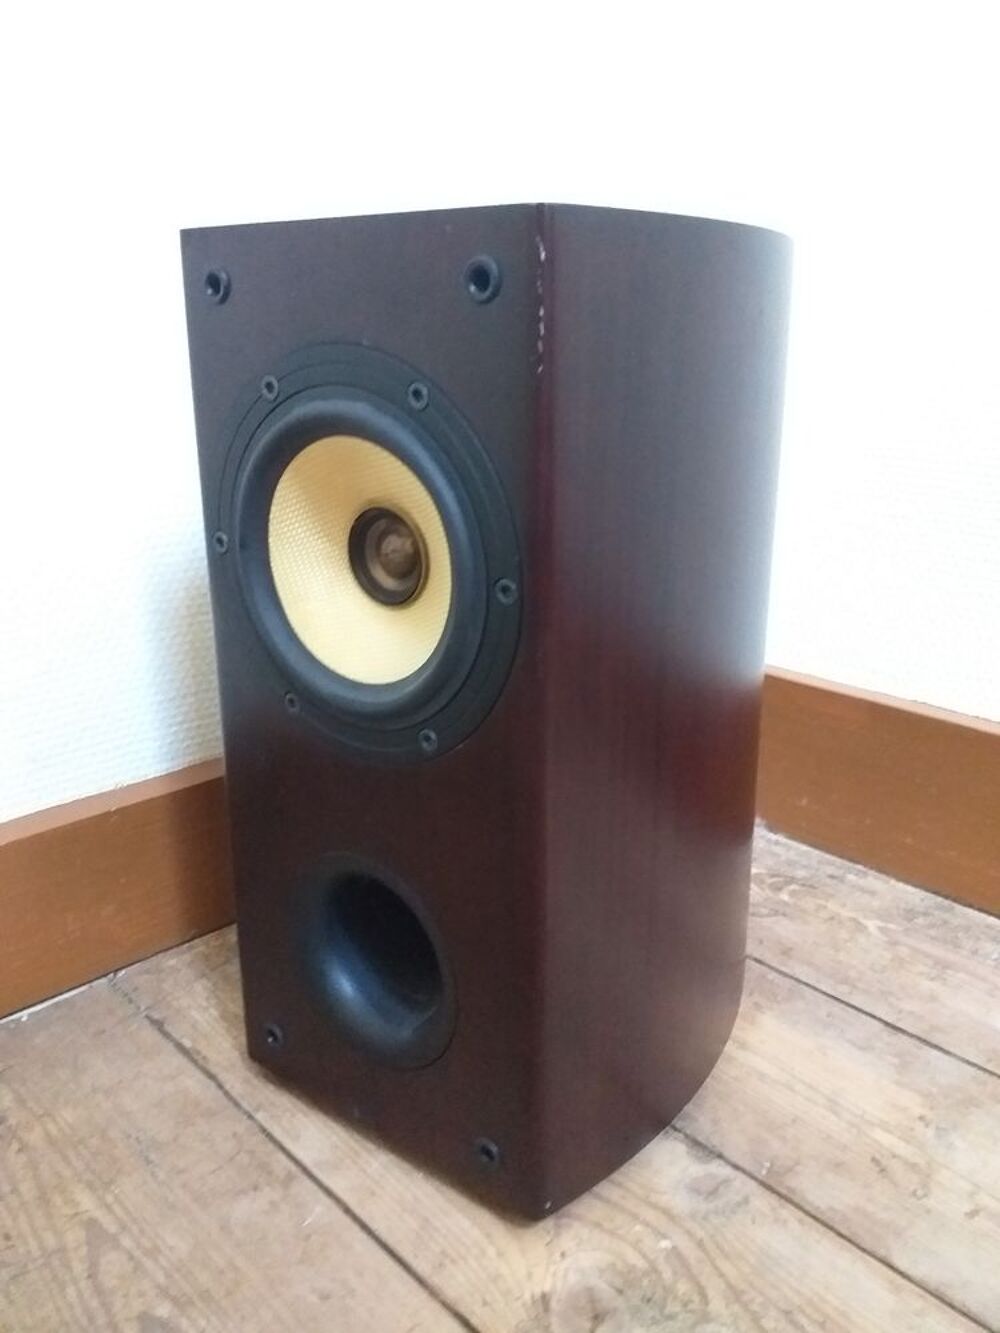 Paire Pioneer/Tad S-F80-W - * 100% ORIGINAL * RARE Audio et hifi